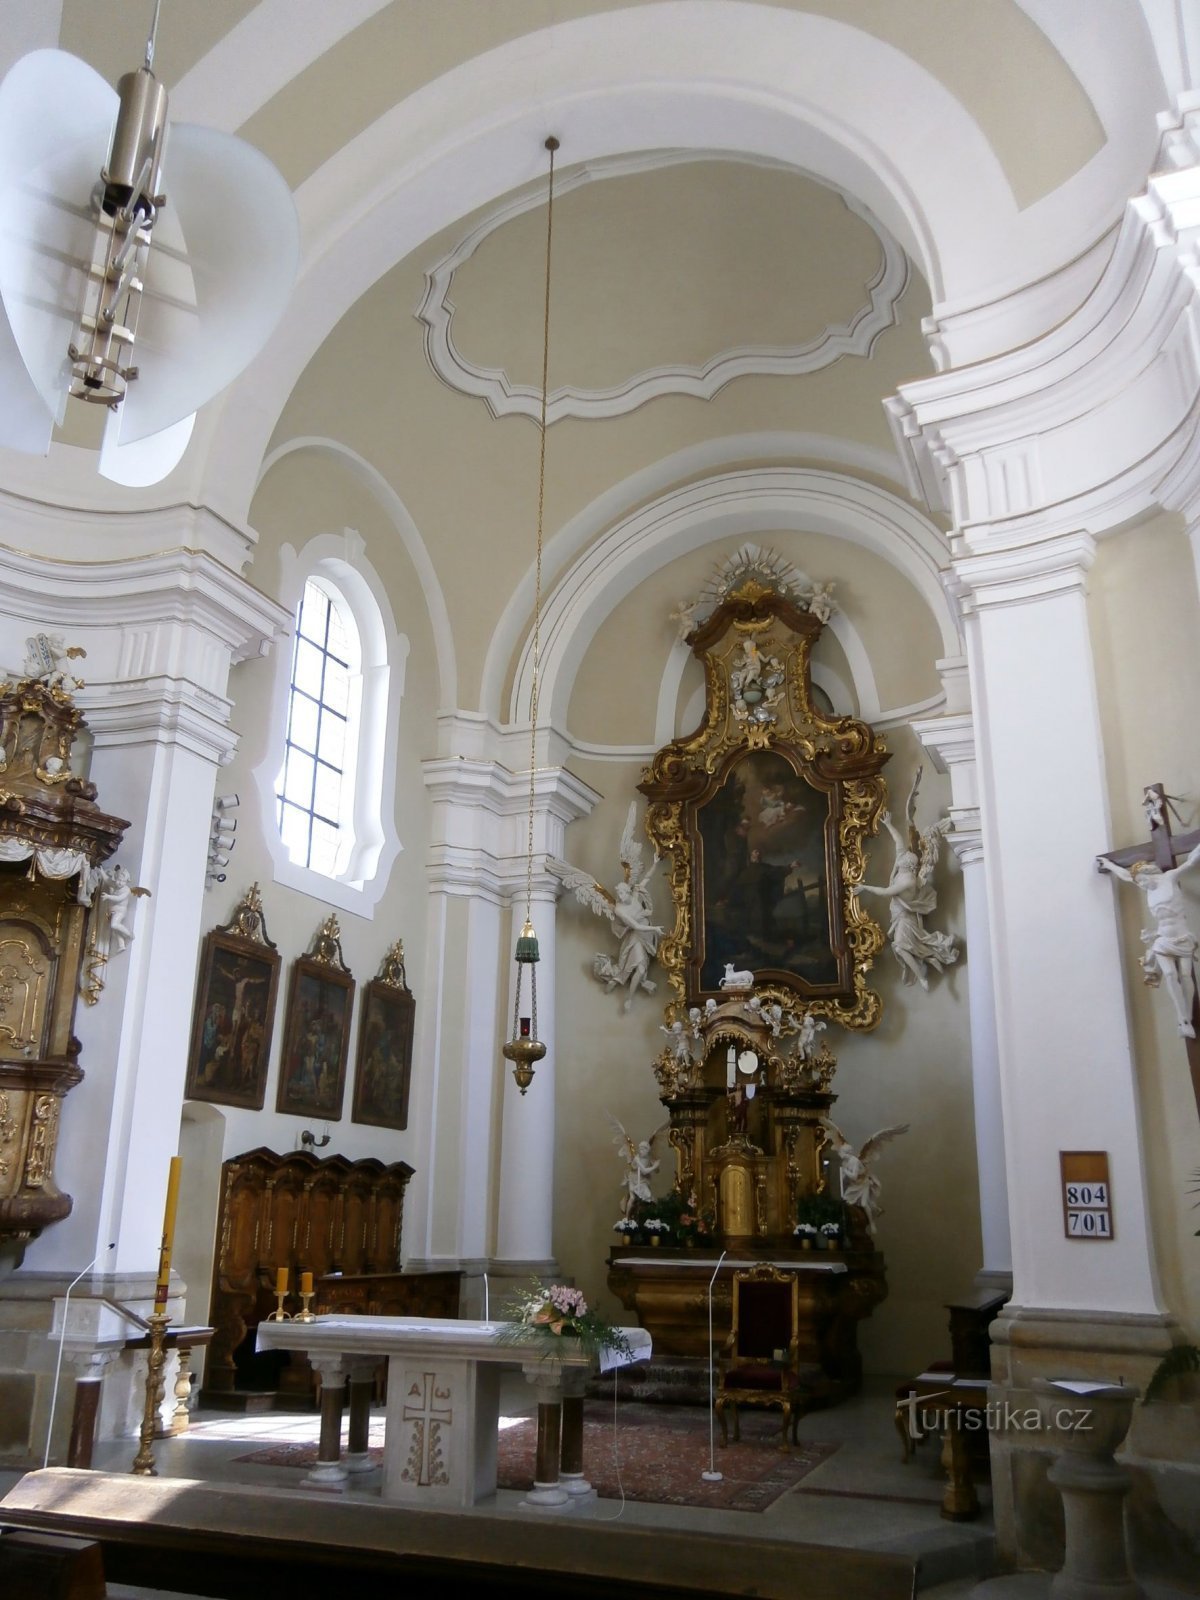 Unutrašnjost crkve sv. Antonína (Hradec Králové, 23.5.2014. svibnja XNUMX.)